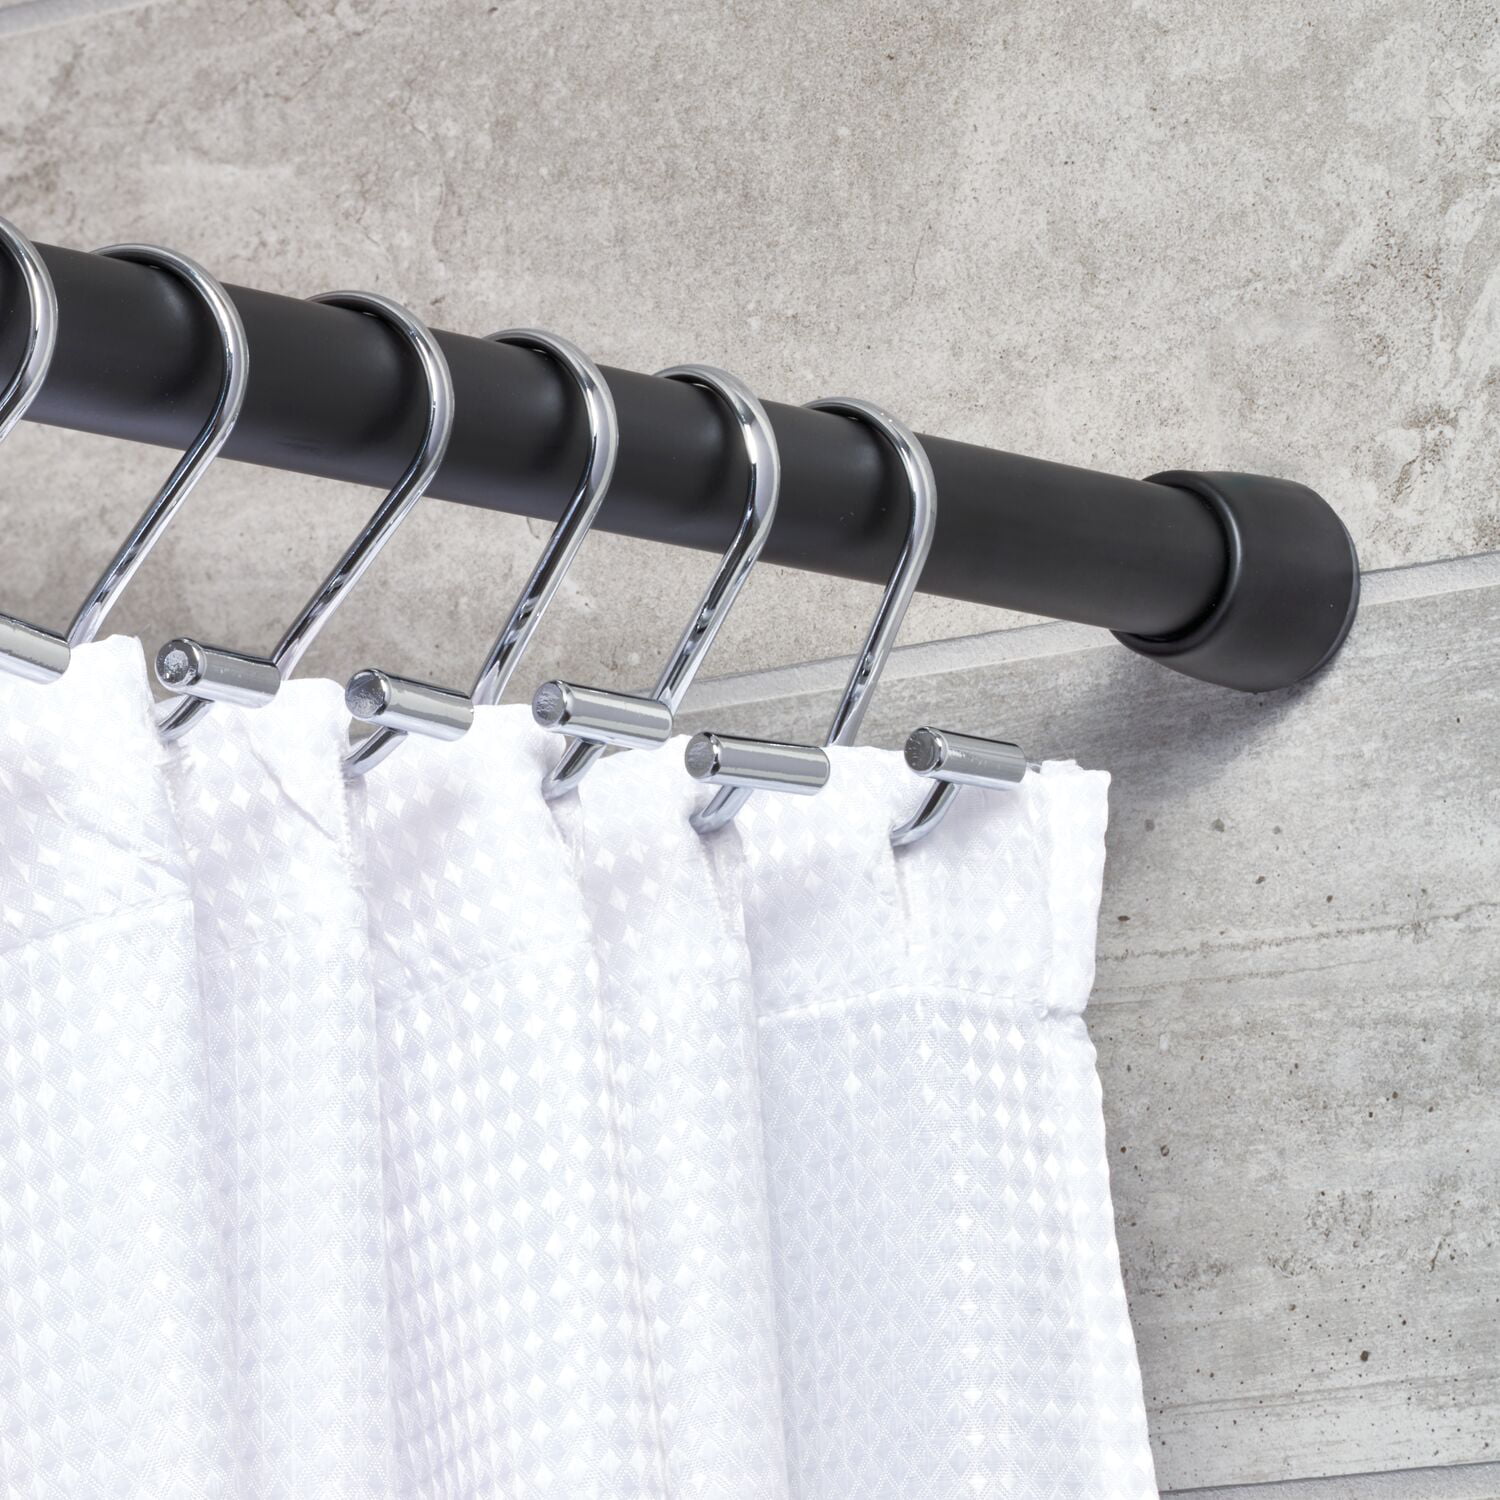 Matte Black Medium InterDesign Cameo Constant Tension Bathroom Shower Curtain Rod 43-75